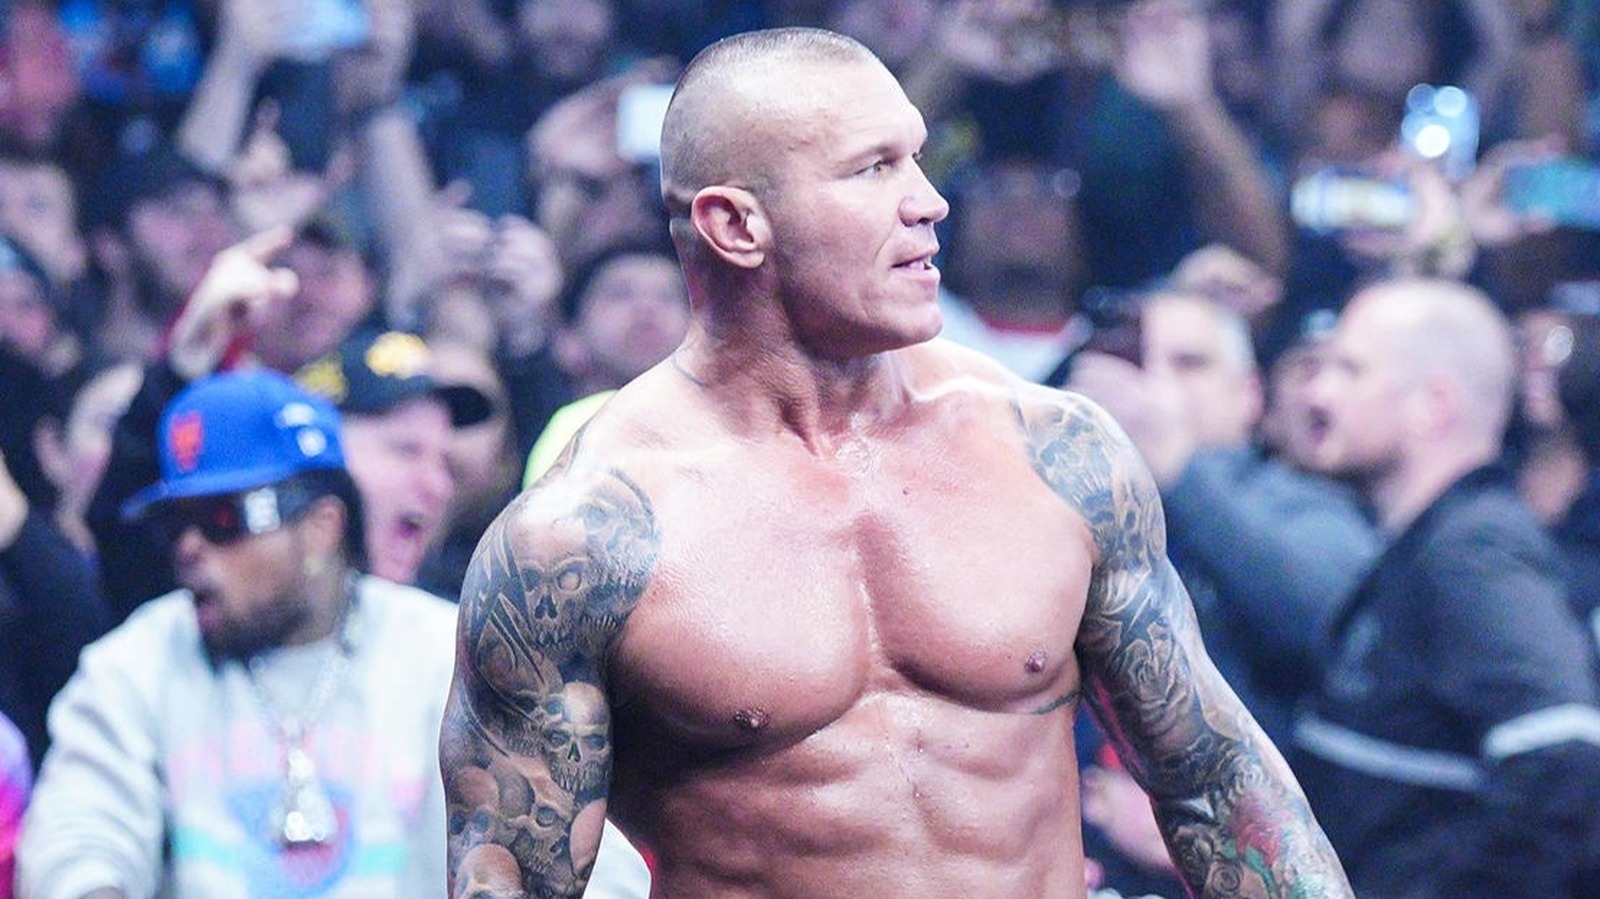 Actualización entre bastidores sobre el contrato de Randy Orton con la WWE luego de una lesión de 18 meses